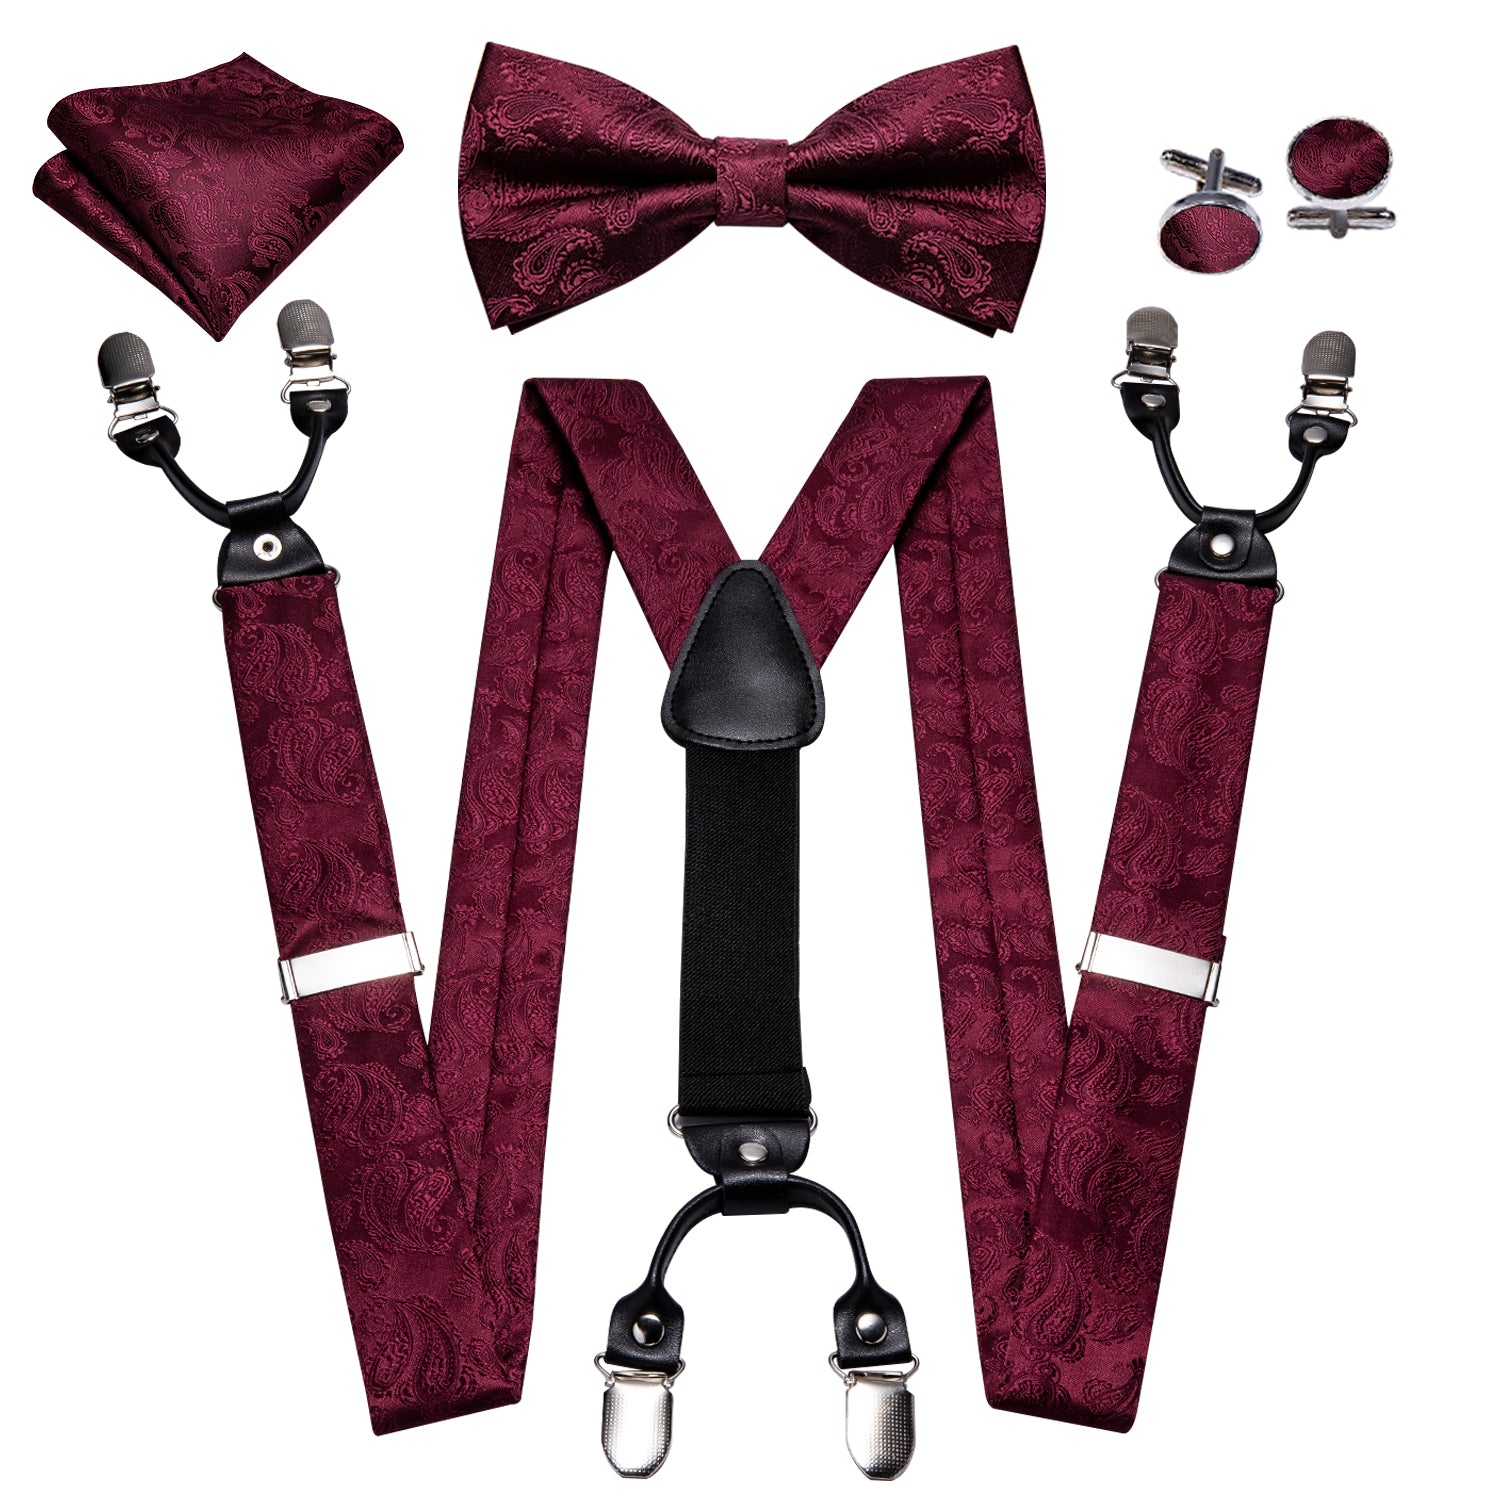 Barry.wang Red Tie Burgundy Paisley Y Back Adjustable Suspenders Bow Tie Set